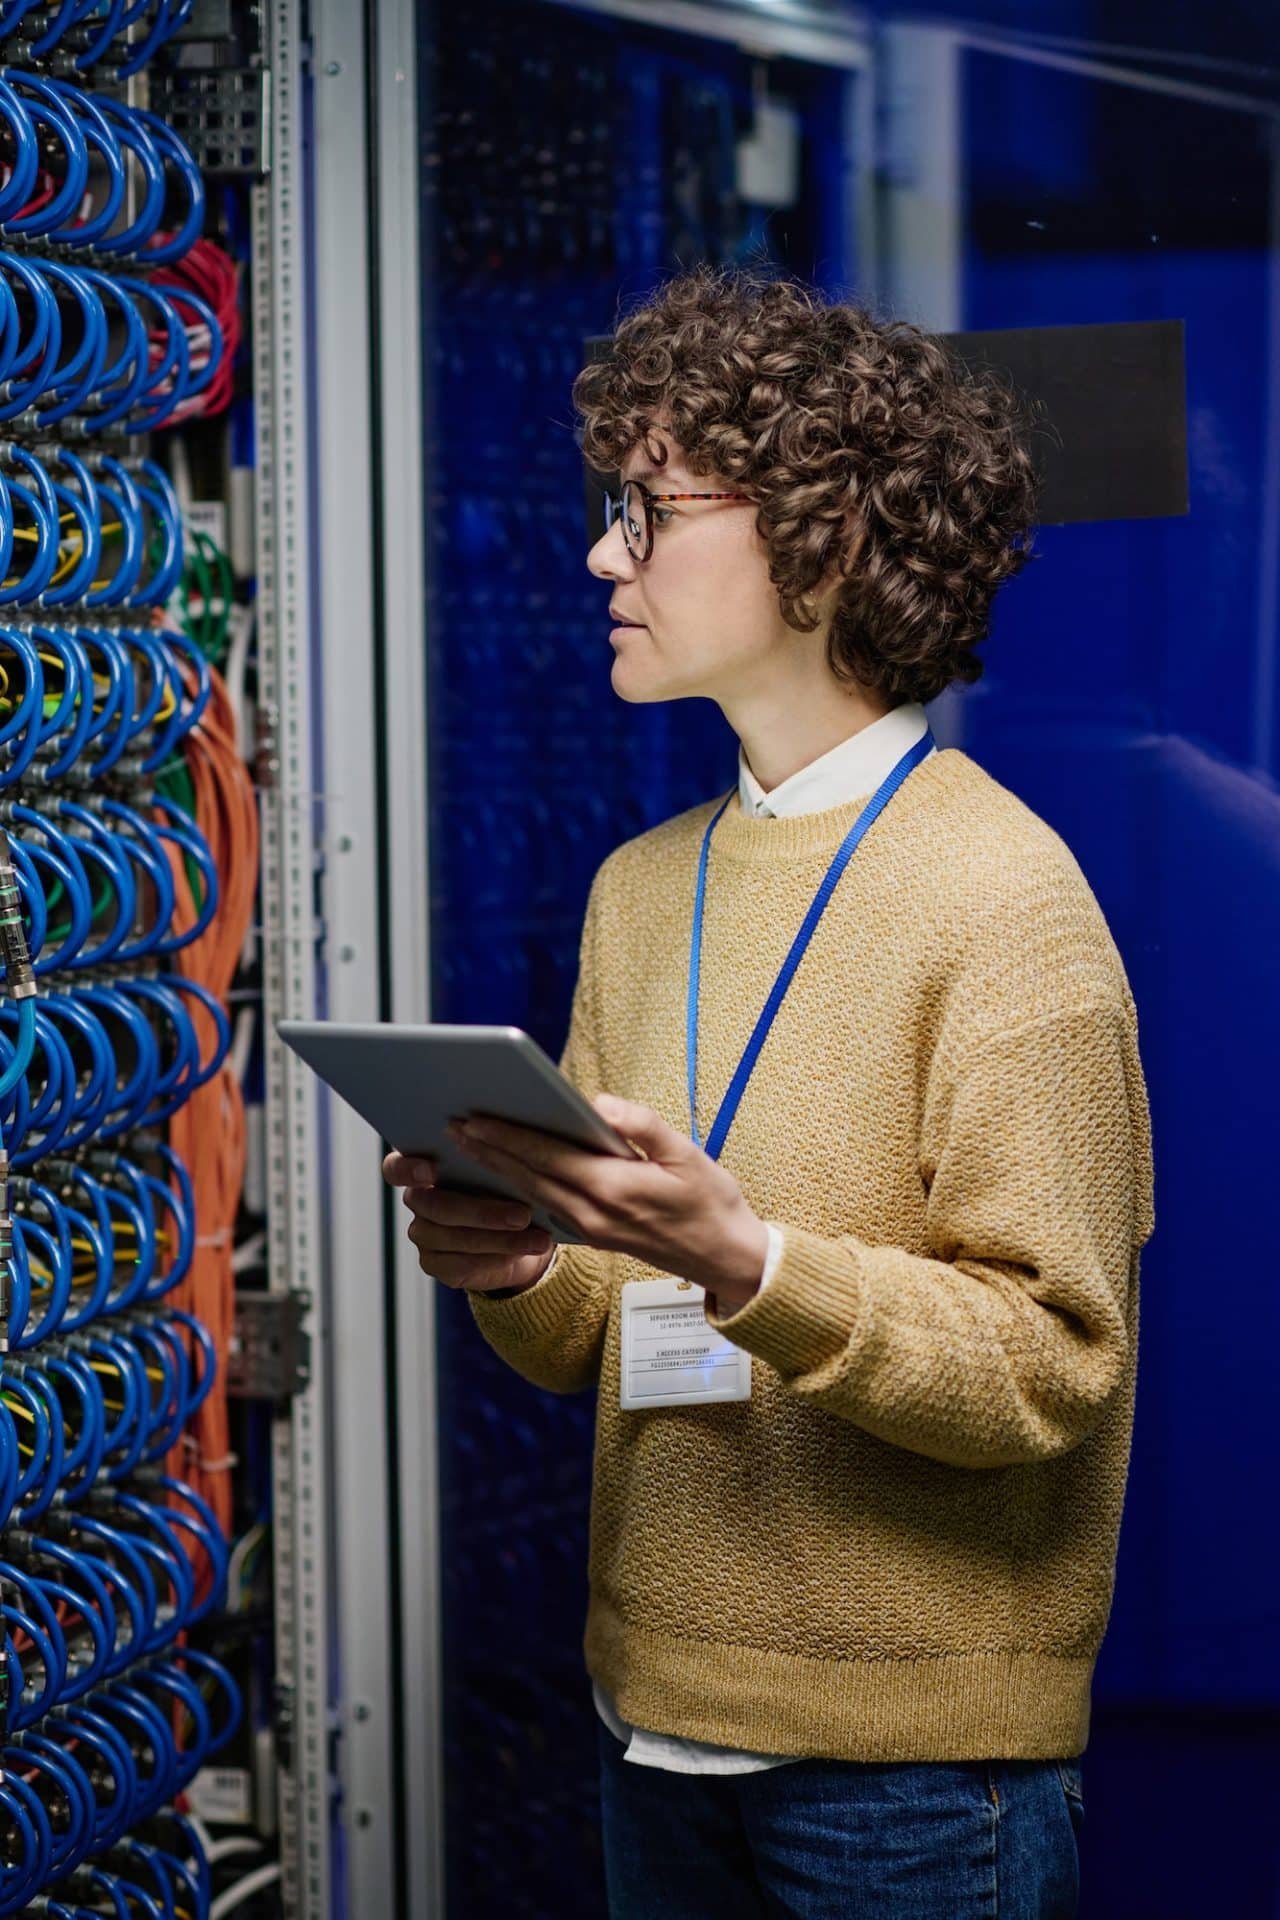 Network engineer working in server room